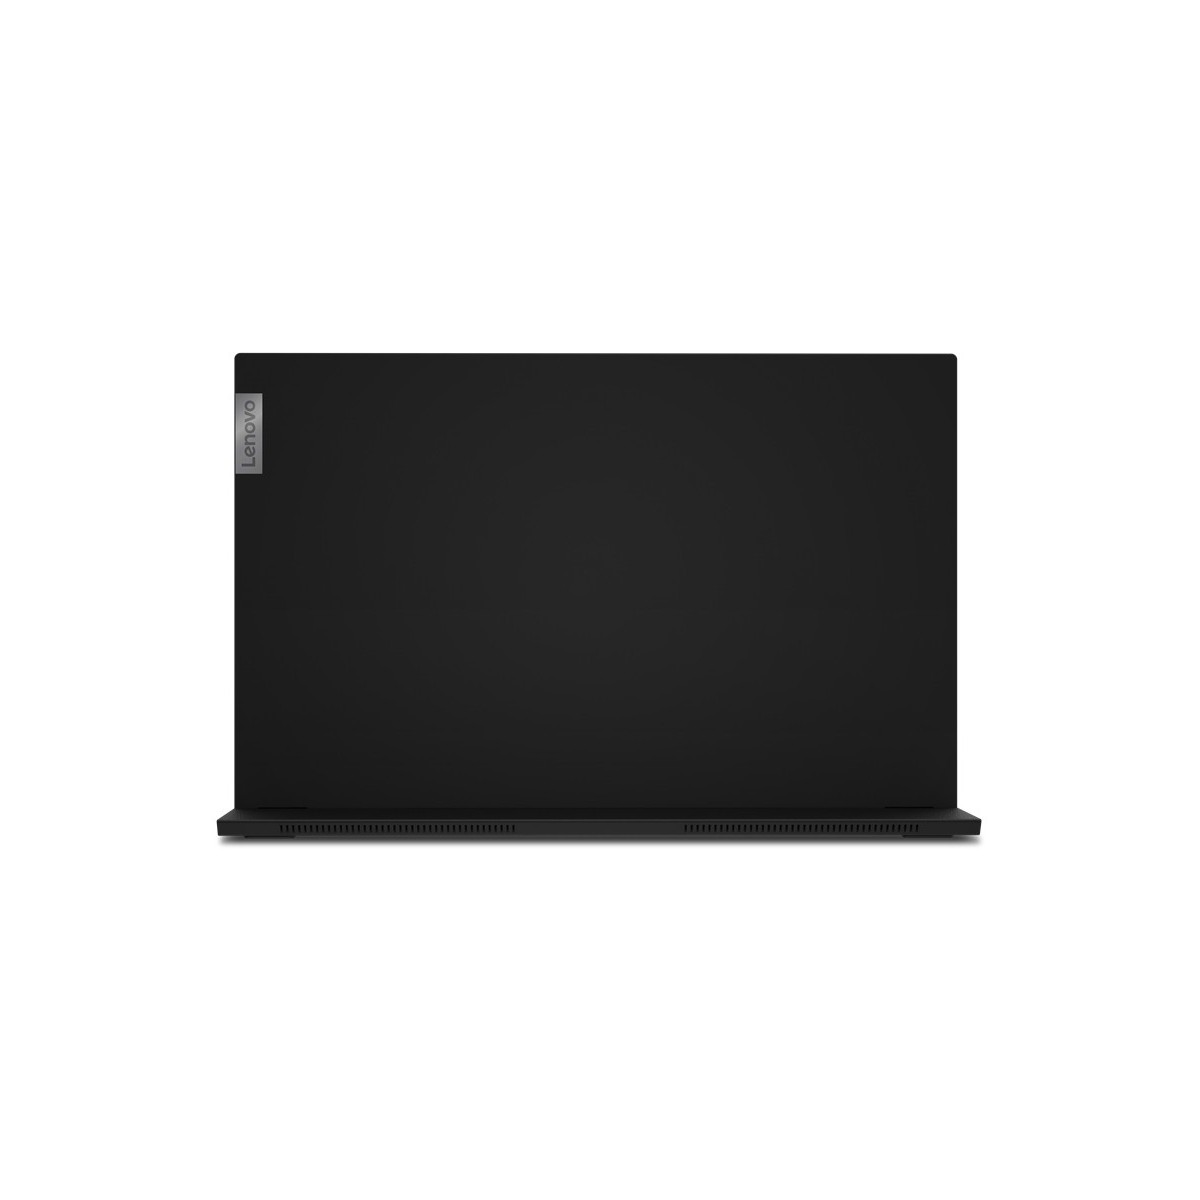 Lenovo ThinkVision M15 - 39.6 cm (15.6) - 1920 x 1080 pixels - Full HD - LED - 14 ms - Black